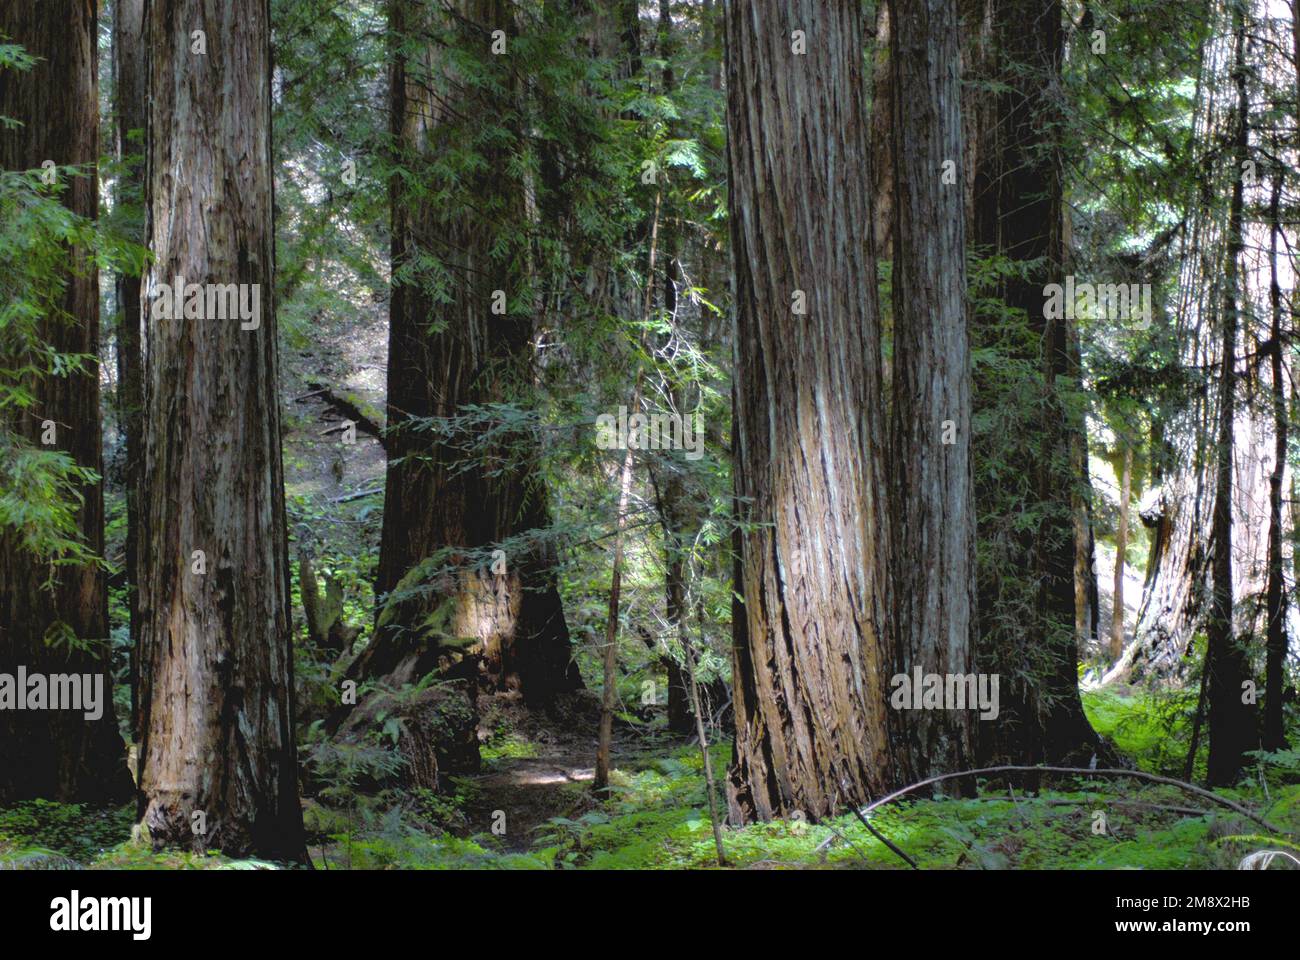 Gli alberi di sequoia (Sequoia sempervirens), gli alberi più alti sulla terra, possono svilupparsi per essere oltre 300 piedi alti. Questi vicini a Eureka ne sono un ottimo esempio. Foto Stock